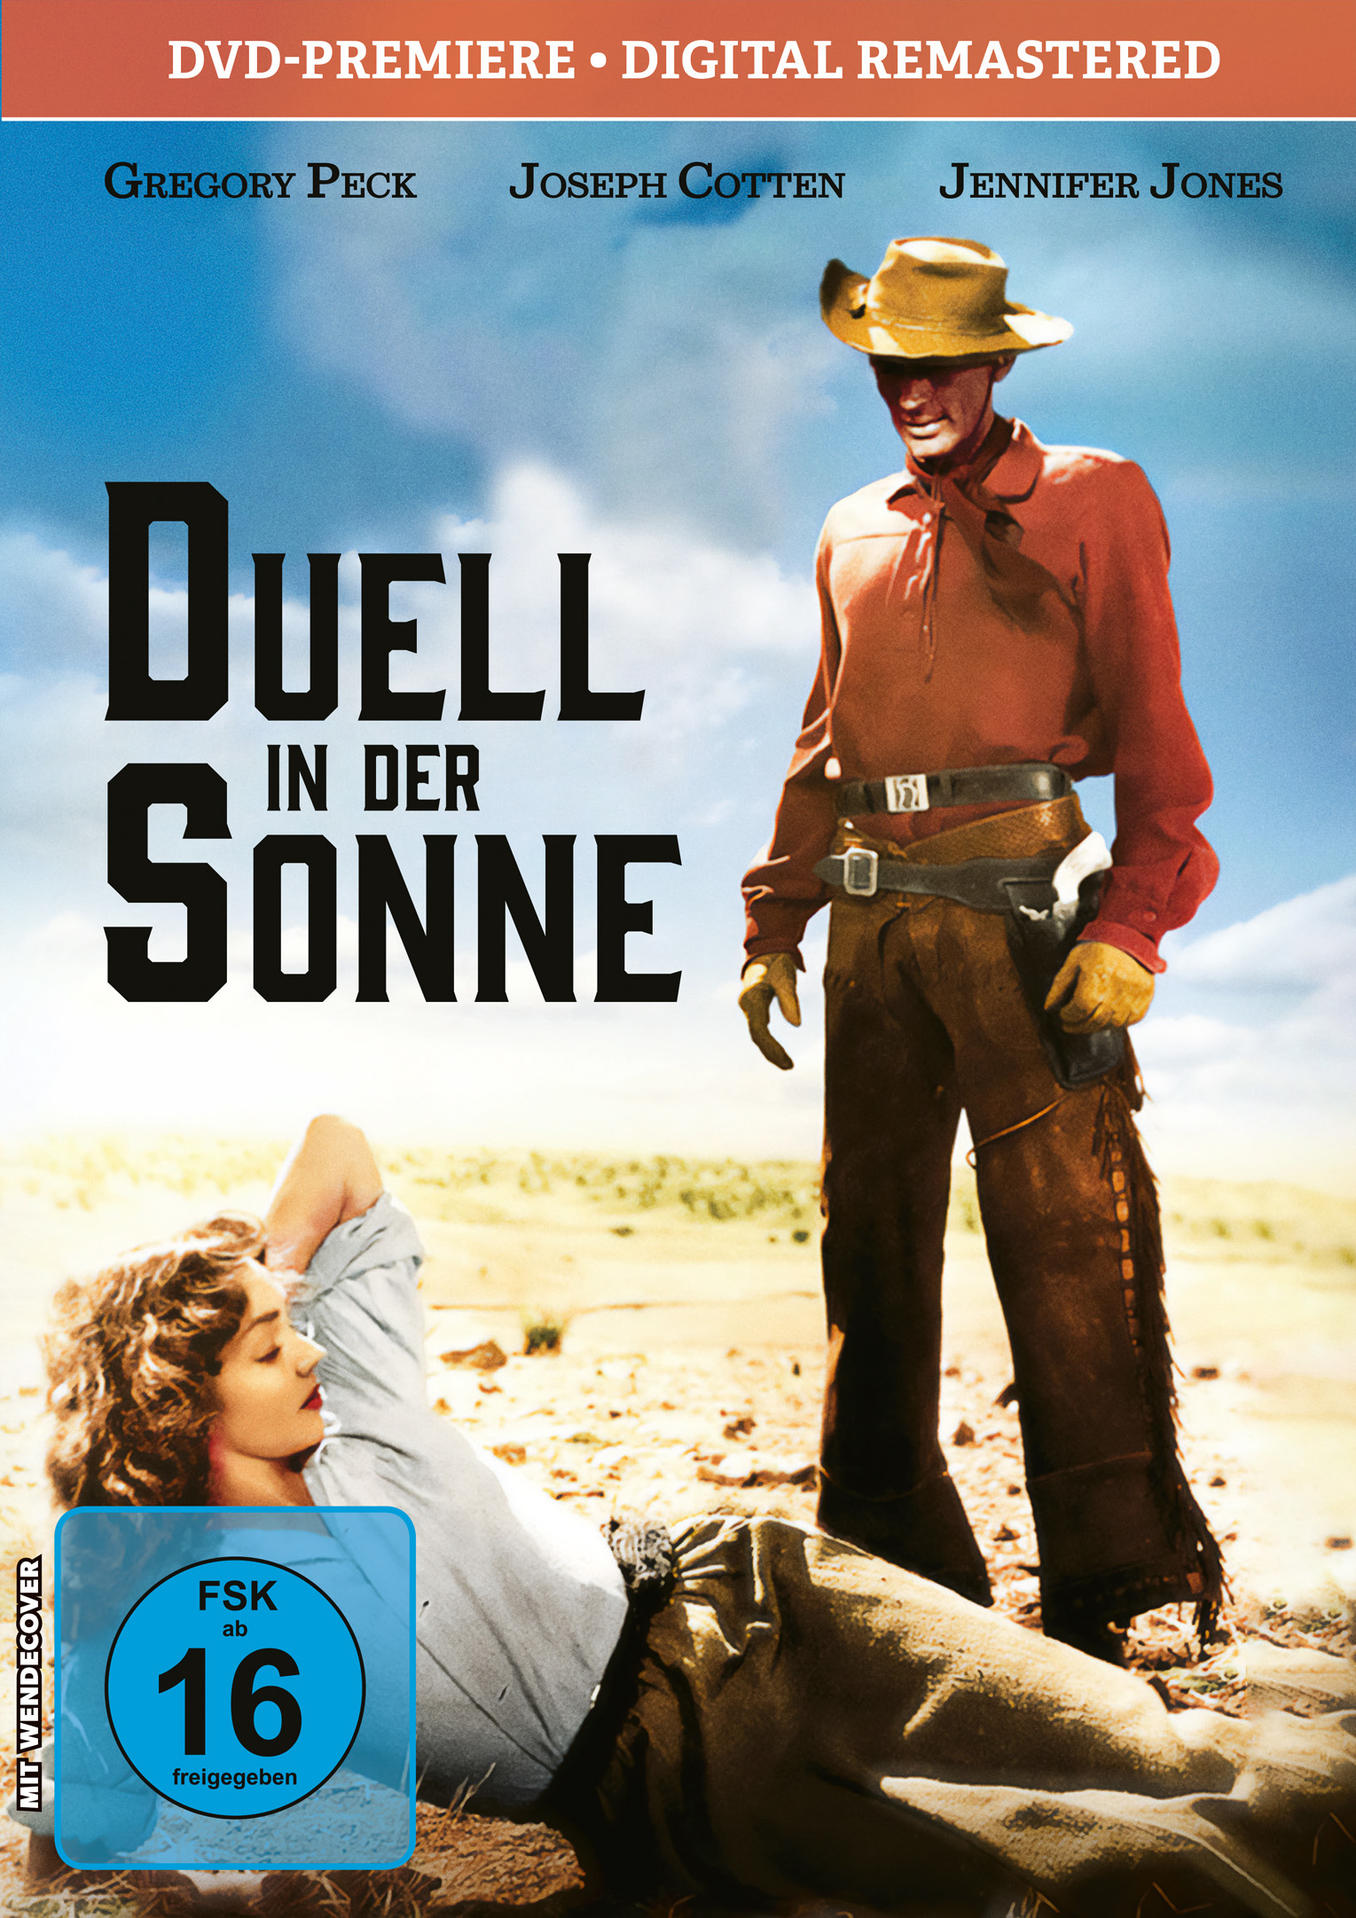 DVD Duell der Sonne-Kinofassung in